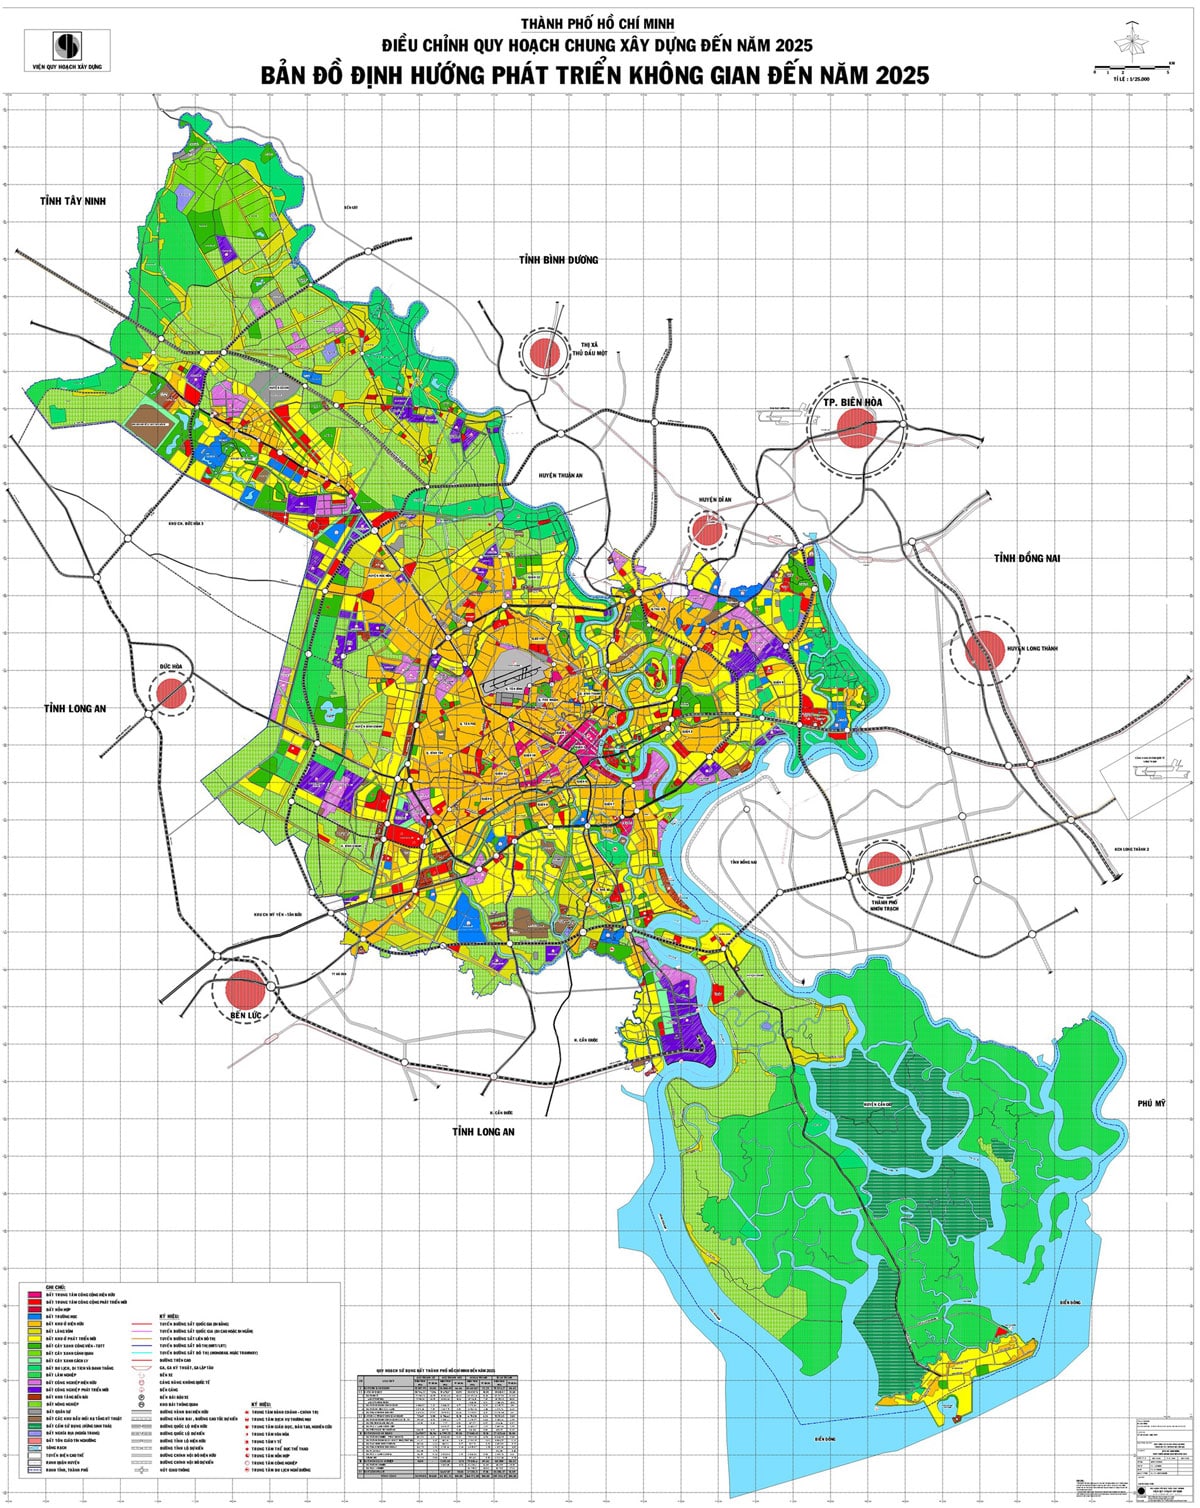 Thành phố Hồ Chí Minh Điều chỉnh quy hoạch chung xây dựng đến năm 2025. Ban đồ định hướng phát triển không gian đến năm 2025 - BẢN ĐỒ HÀNH CHÍNH TPHCM VÀ 24 QUẬN HUYỆN MỚI NHẤT 2021